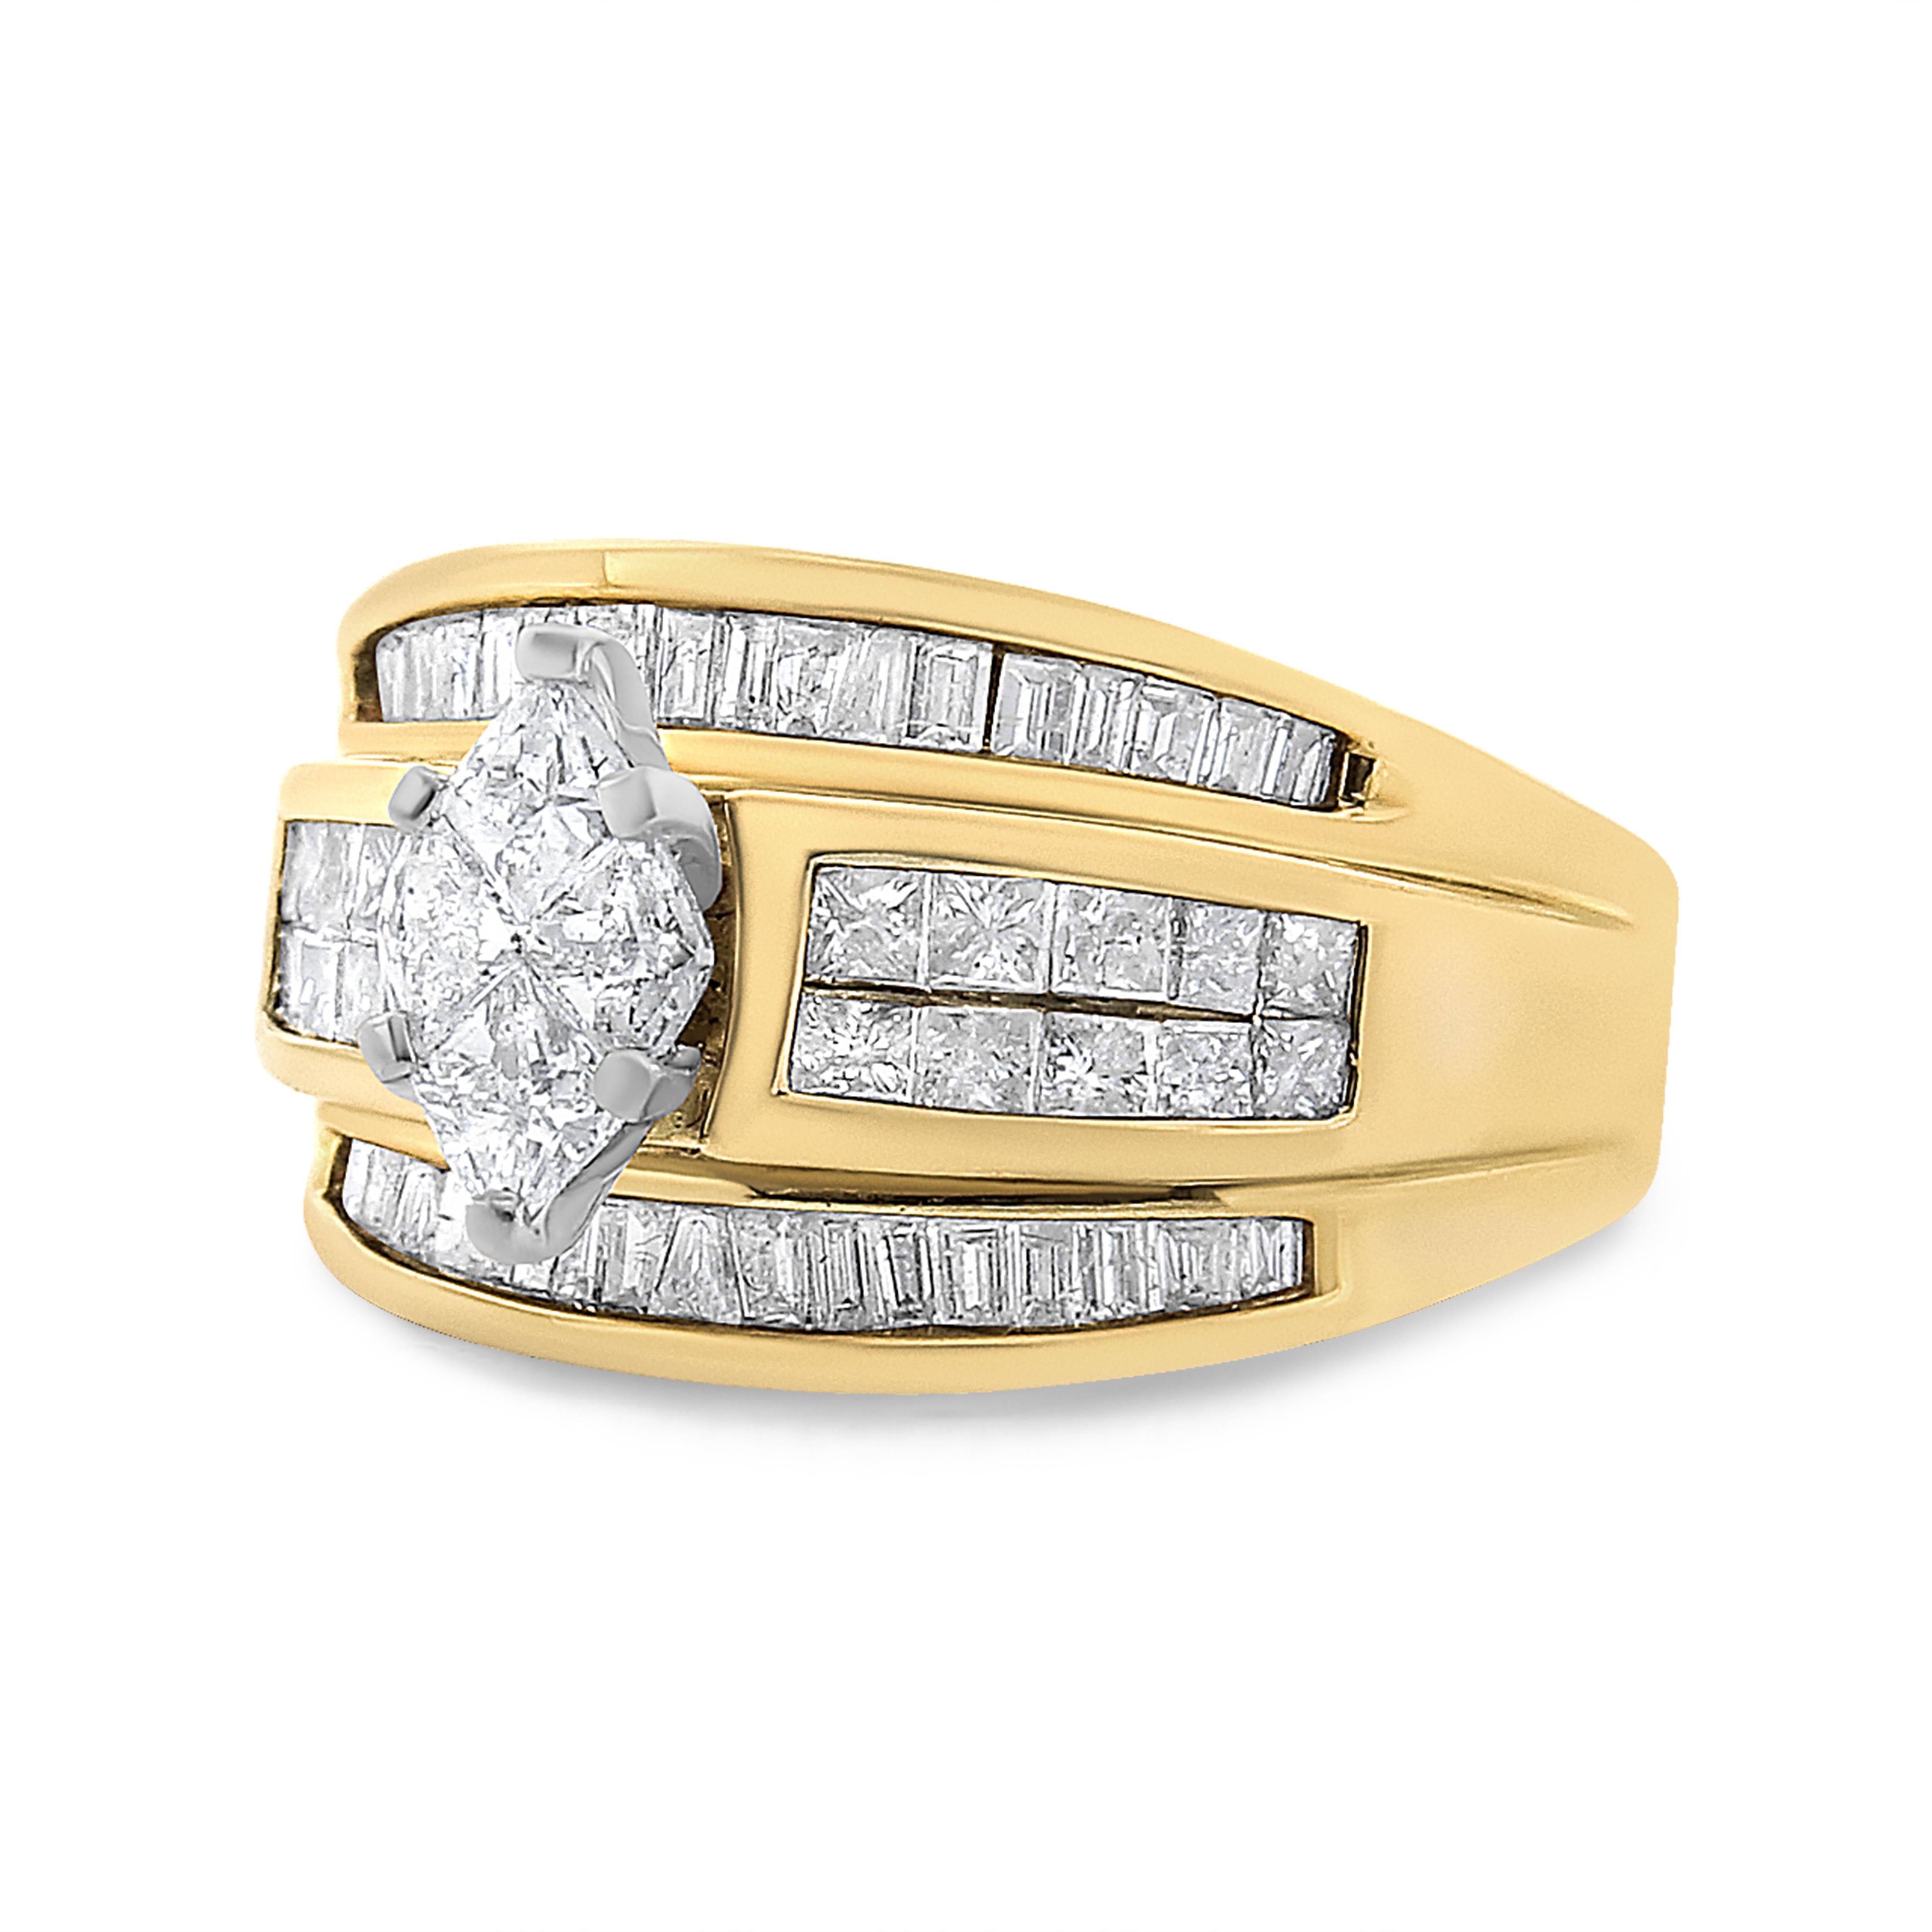 Dieser kühne und auffällige Ring aus 14 Karat Gelbgold ist fachmännisch mit einem atemberaubenden 1 1/2 cttw natürlichen Diamanten besetzt. 4 Diamanten im Tortenschliff funkeln in der Mitte des Rings. Diamanten im Prinzessinnen- und Baguetteschliff